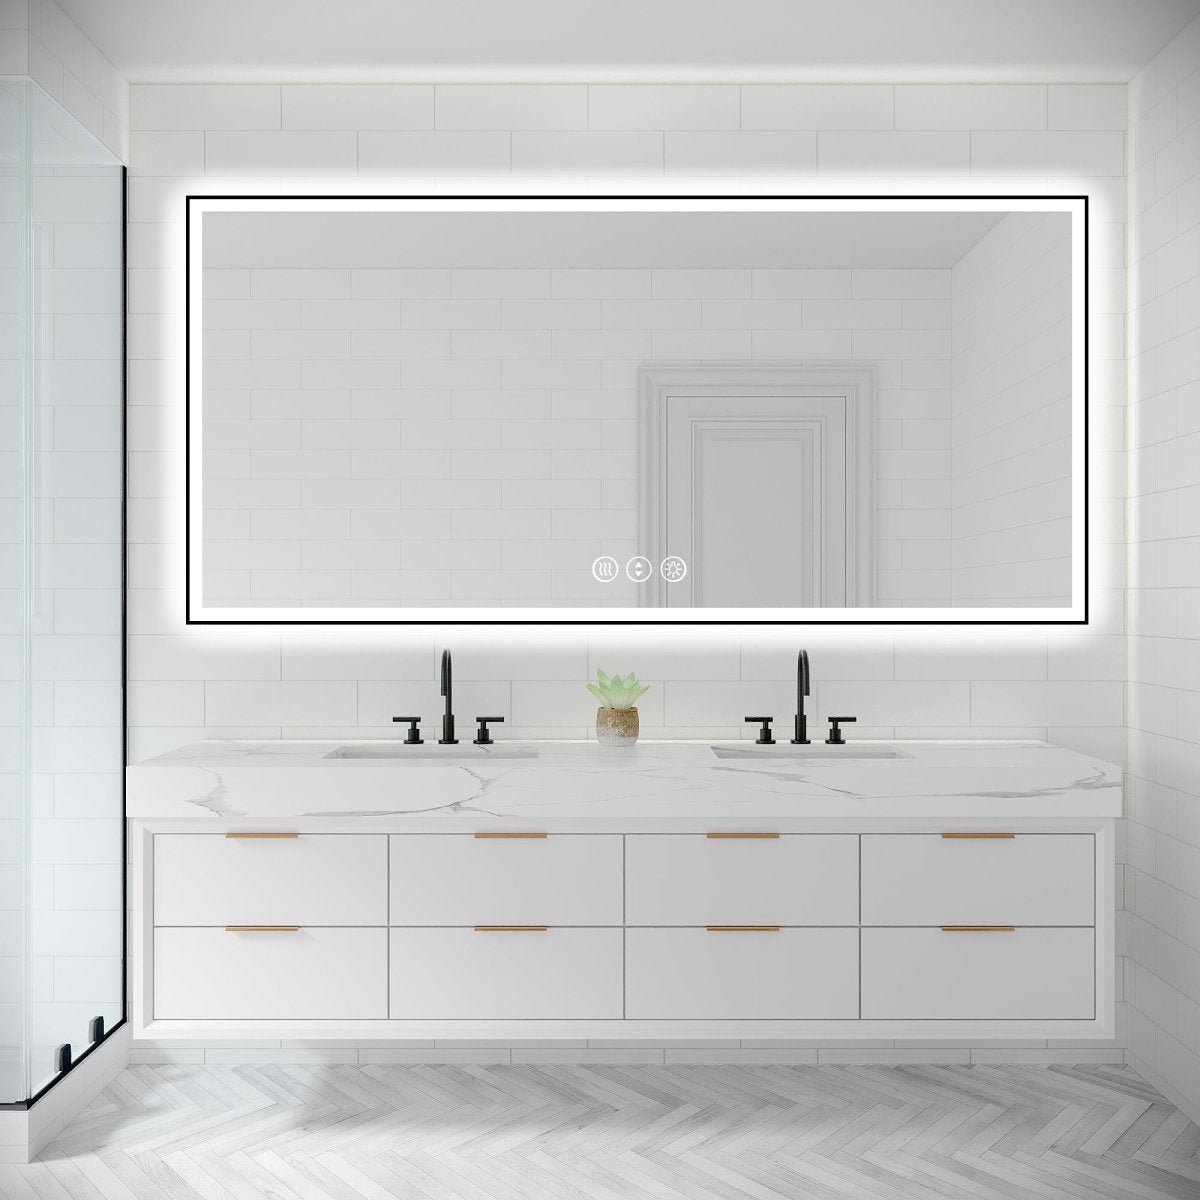 ExBriteUSA Apex-Noir 84"x40" Framed LED Lighted Bathroom Mirror